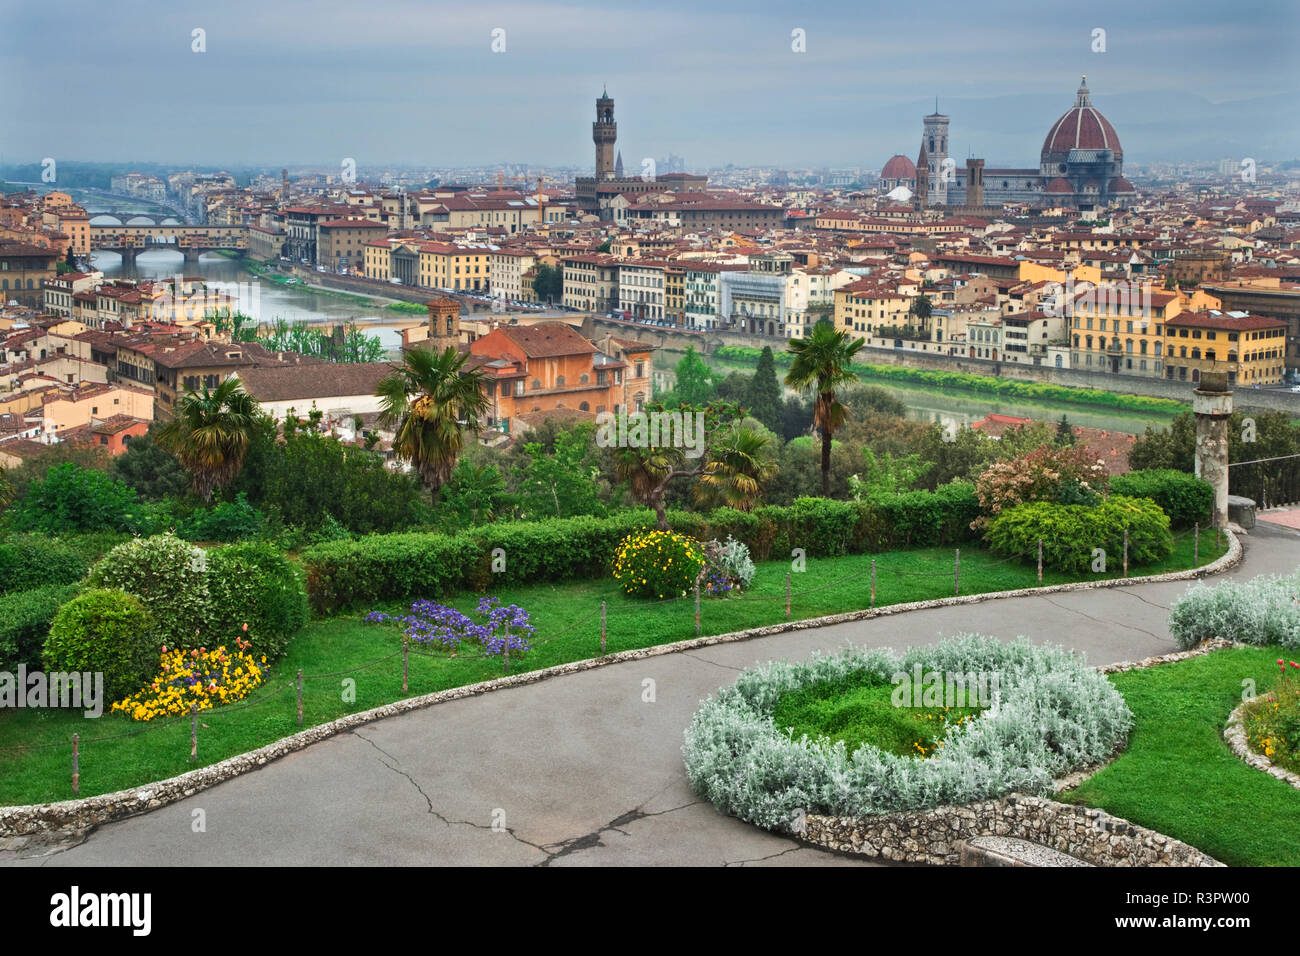 Italien, Florenz. Garten und die Stadt. Kredit als: Dennis Flaherty/Jaynes Galerie/DanitaDelimont. com Stockfoto